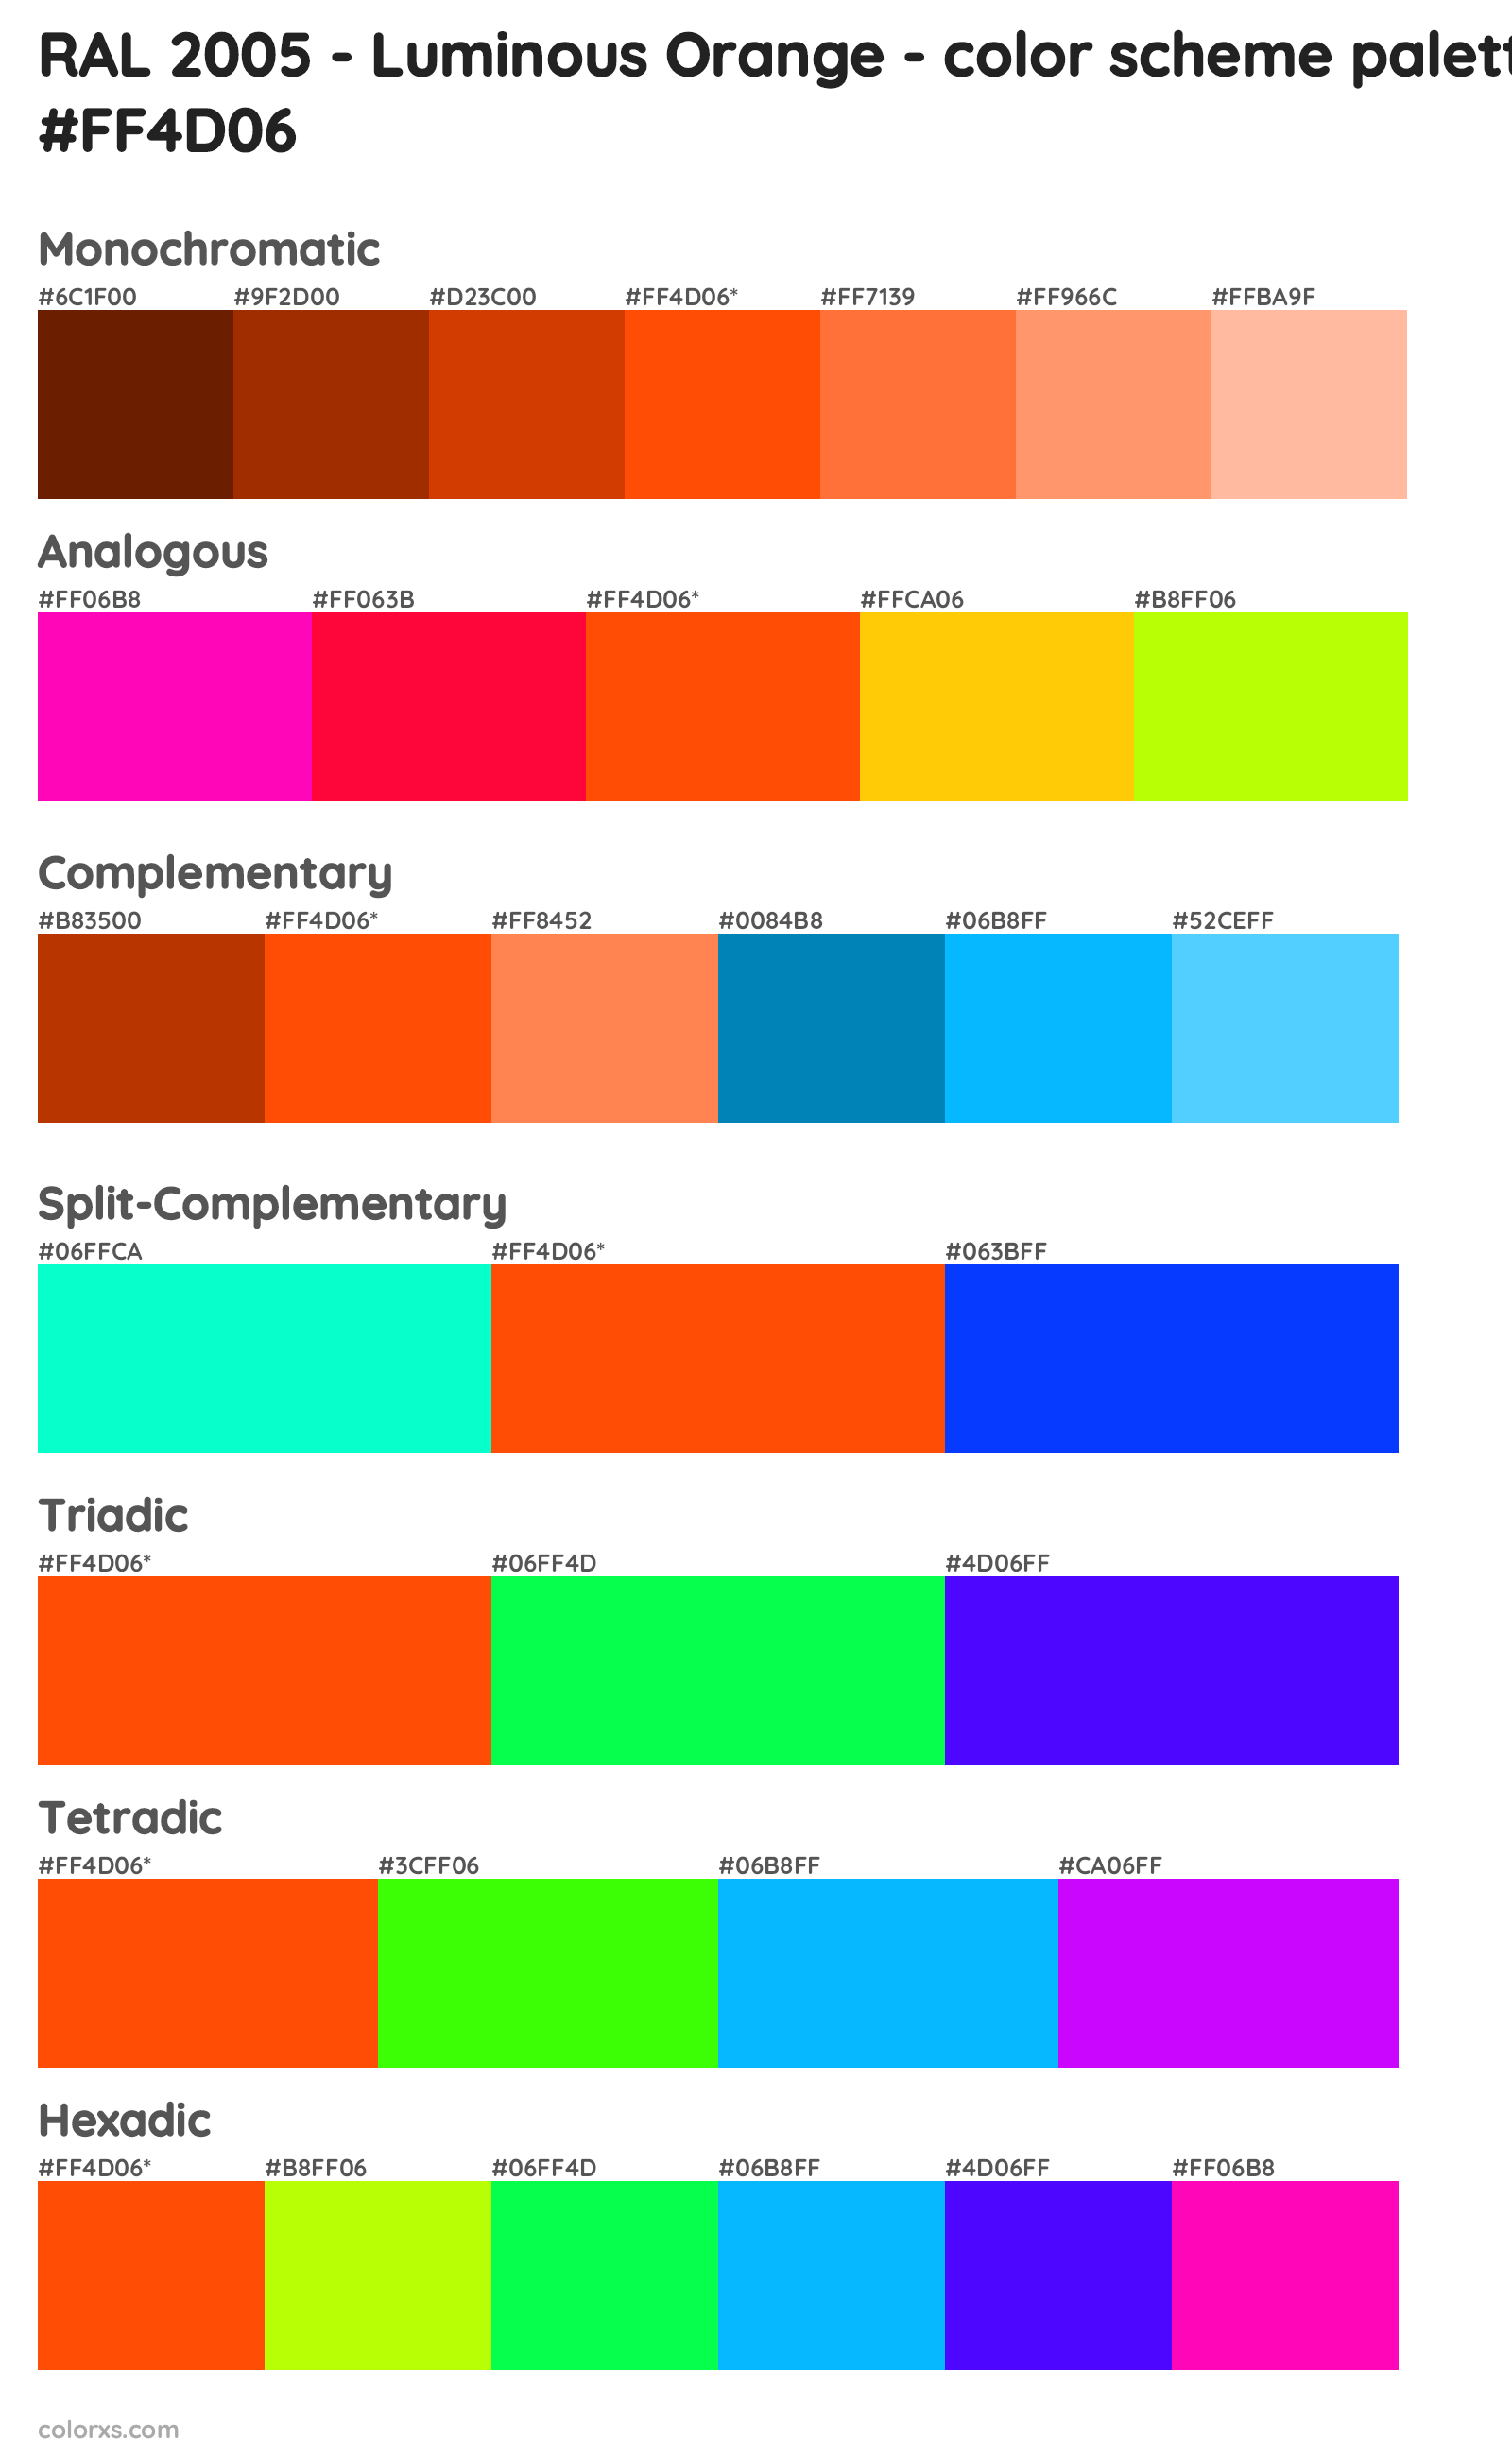 RAL 2005 - Luminous Orange Color Scheme Palettes